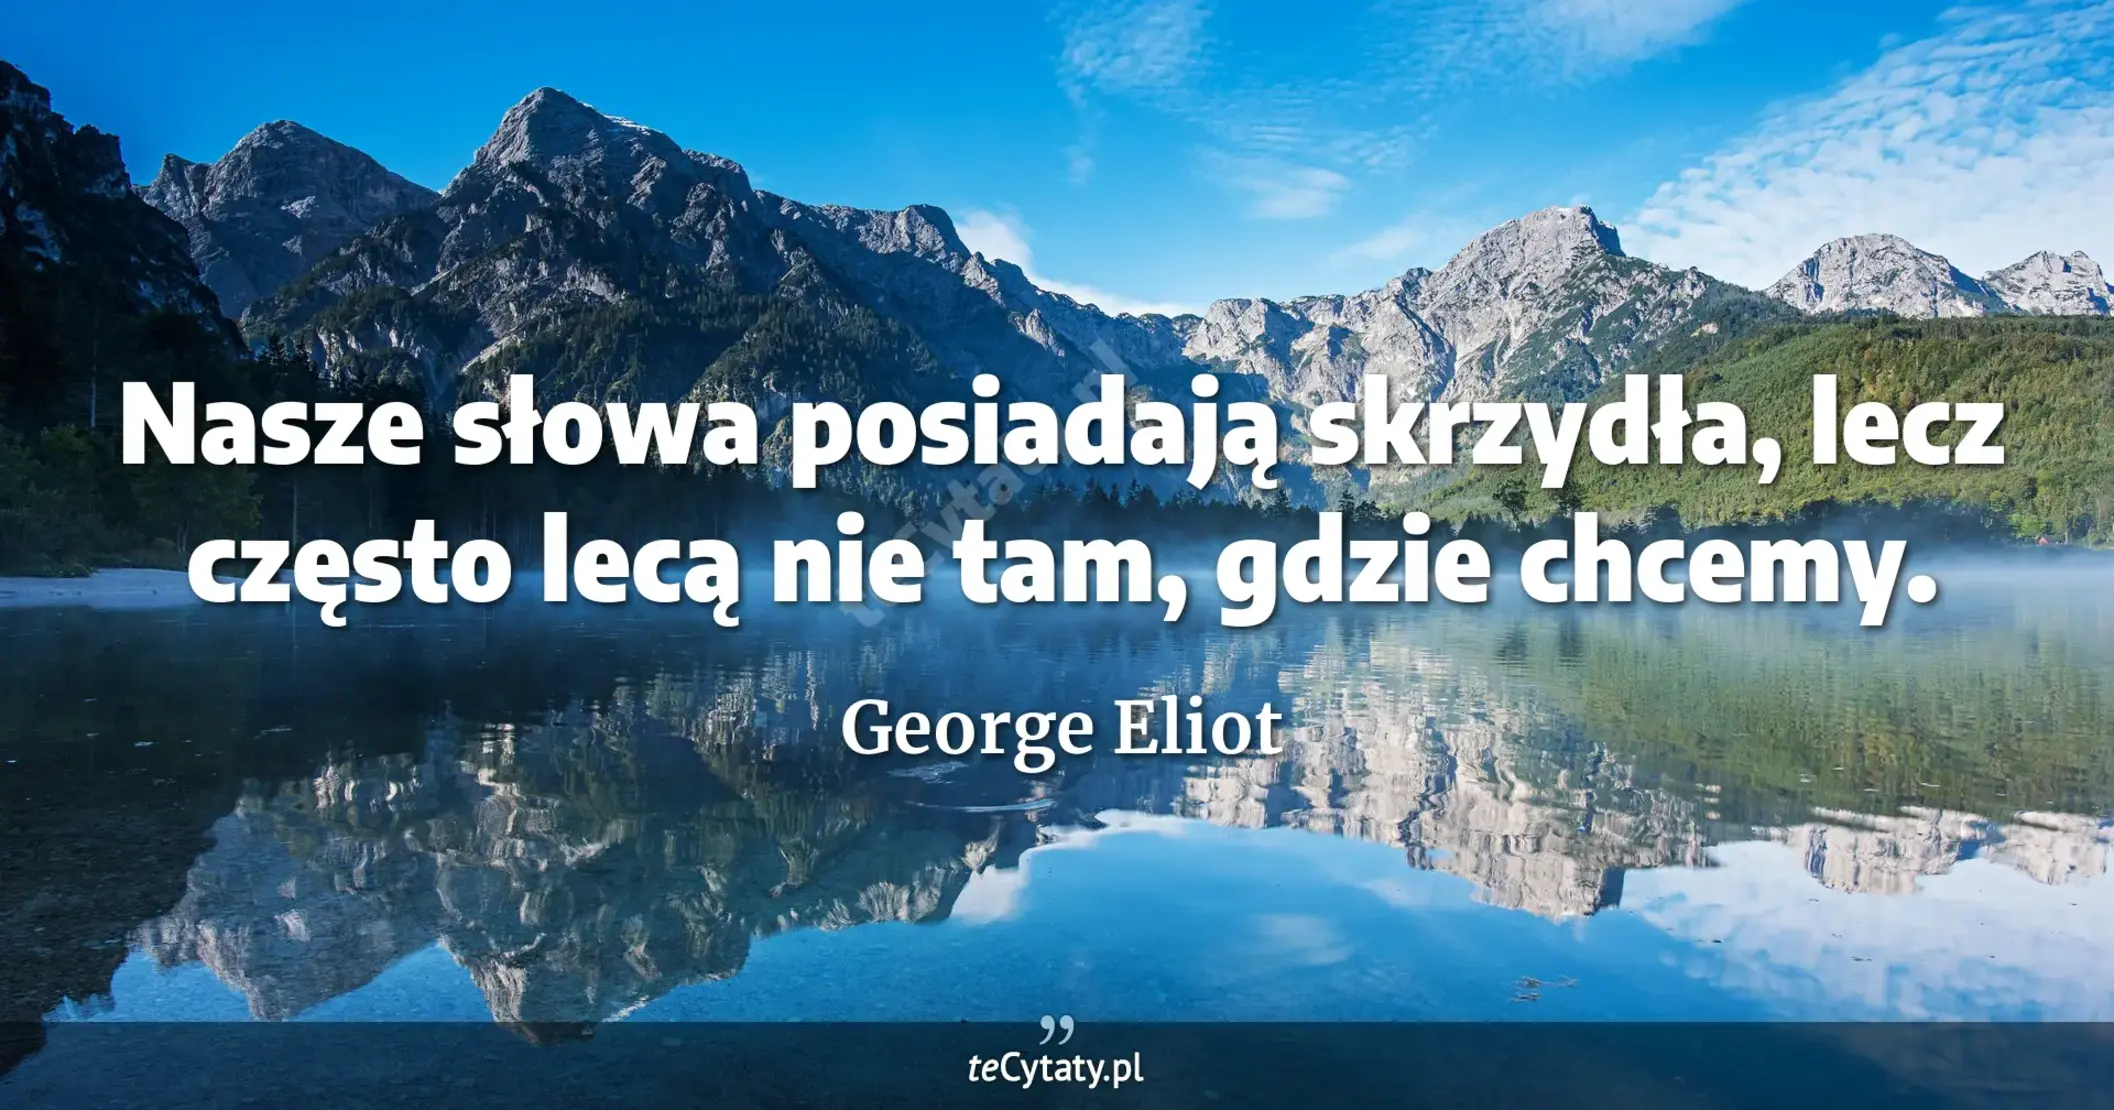 Nasze słowa posiadają skrzydła, lecz często lecą nie tam, gdzie chcemy. - George Eliot